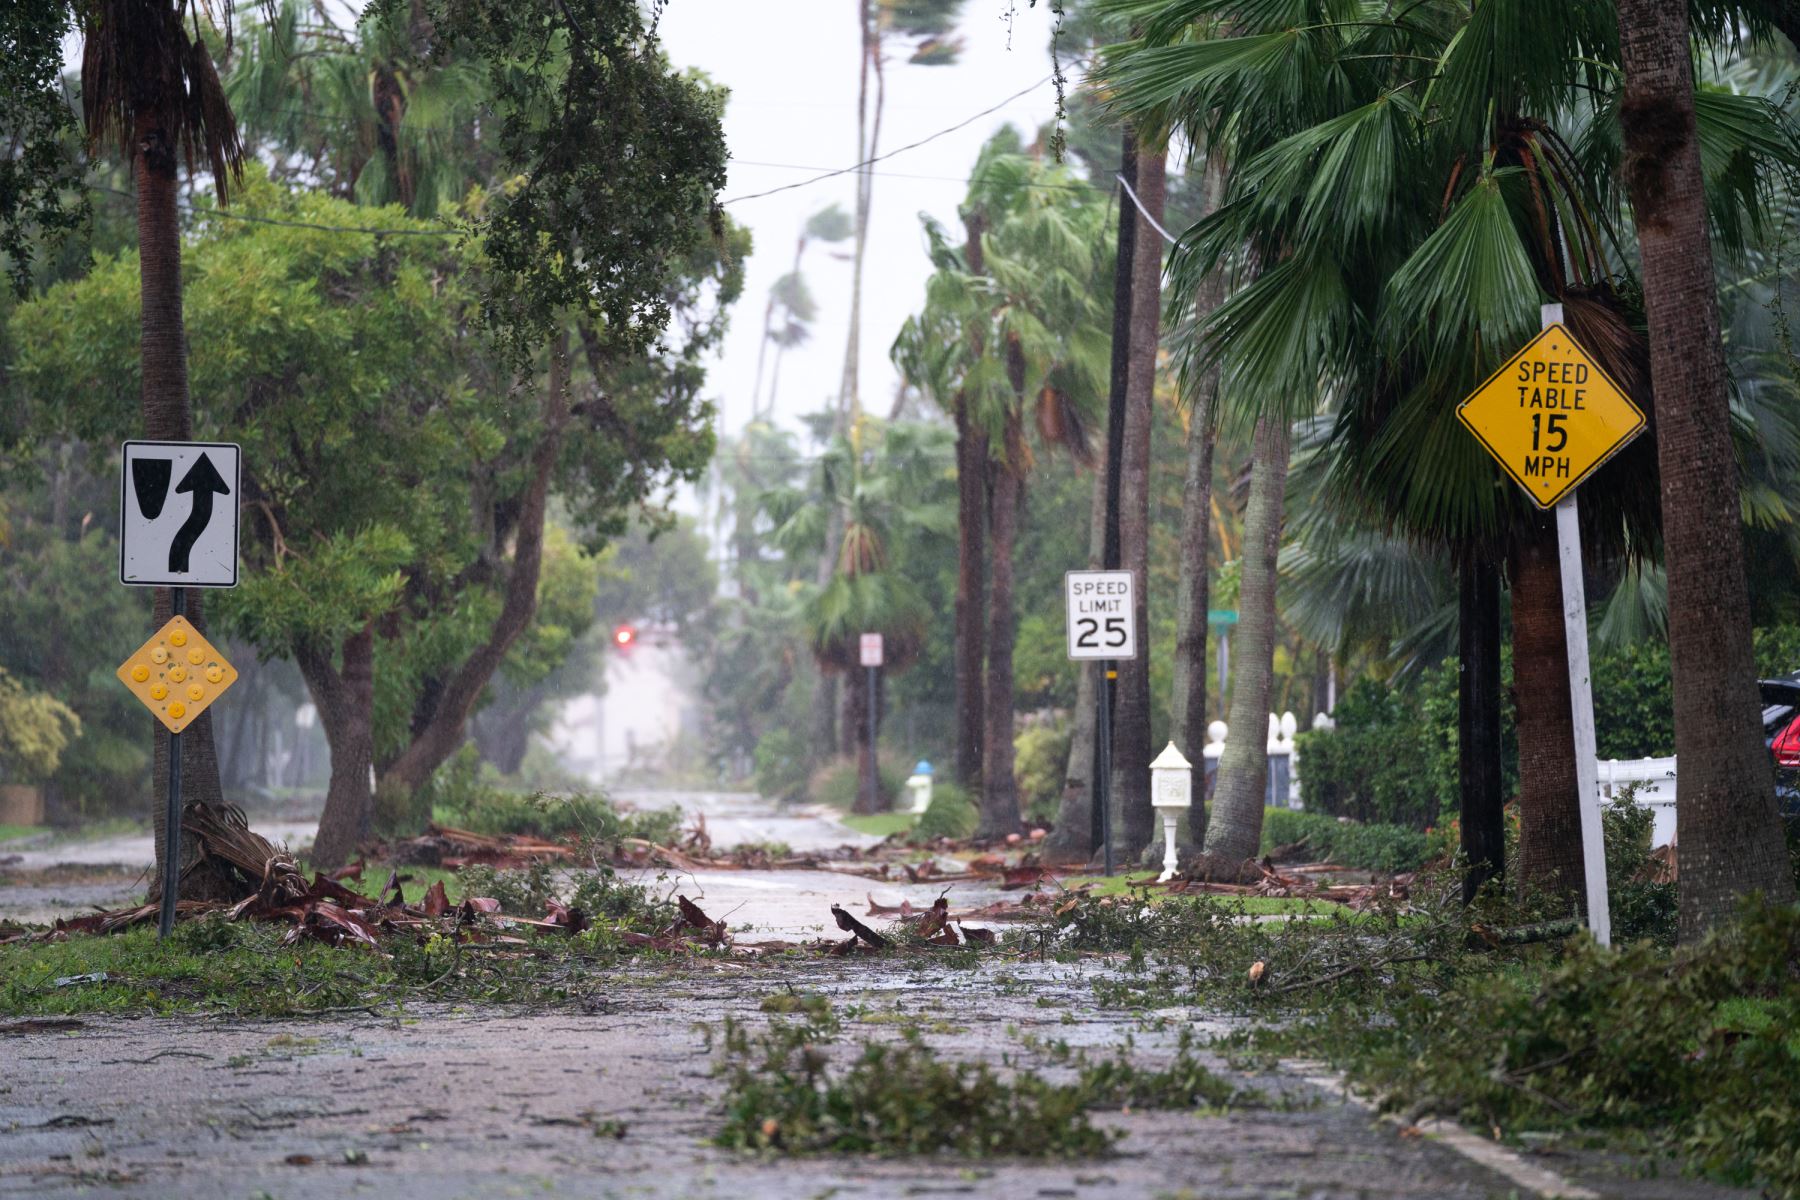 Los escombros de la tormenta ensucian una calle tras el huracán Ian en Sarasota, Florida. Ian tocó tierra esta tarde, con vientos de 150 millas por hora y una marejada ciclónica de 12 pies y dejando sin electricidad a casi 1,5 millones de personas.
Foto: AFP